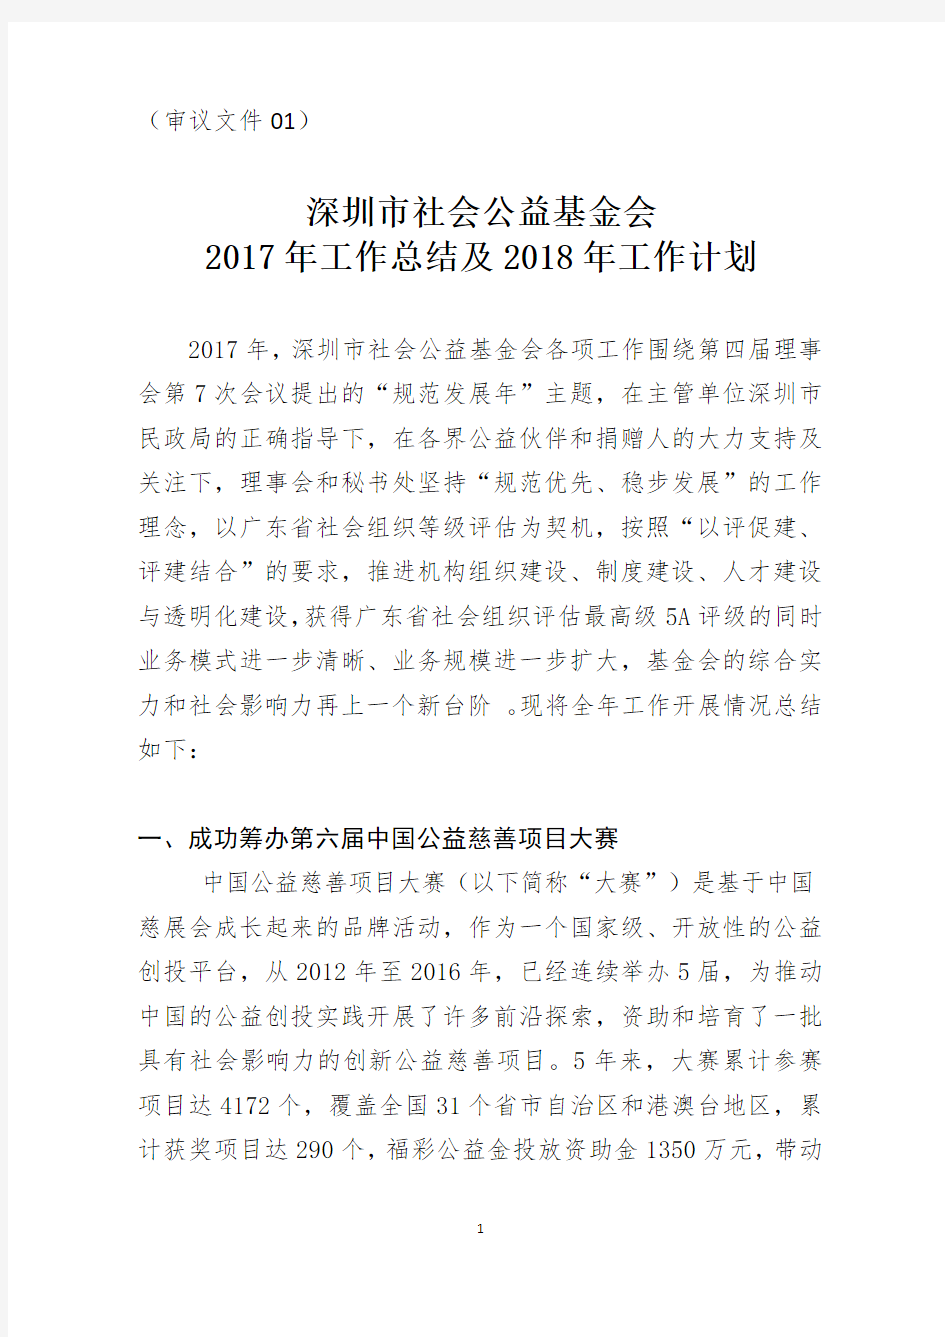 深圳市社会公益基金会2017年工作总结及2018年工作计划